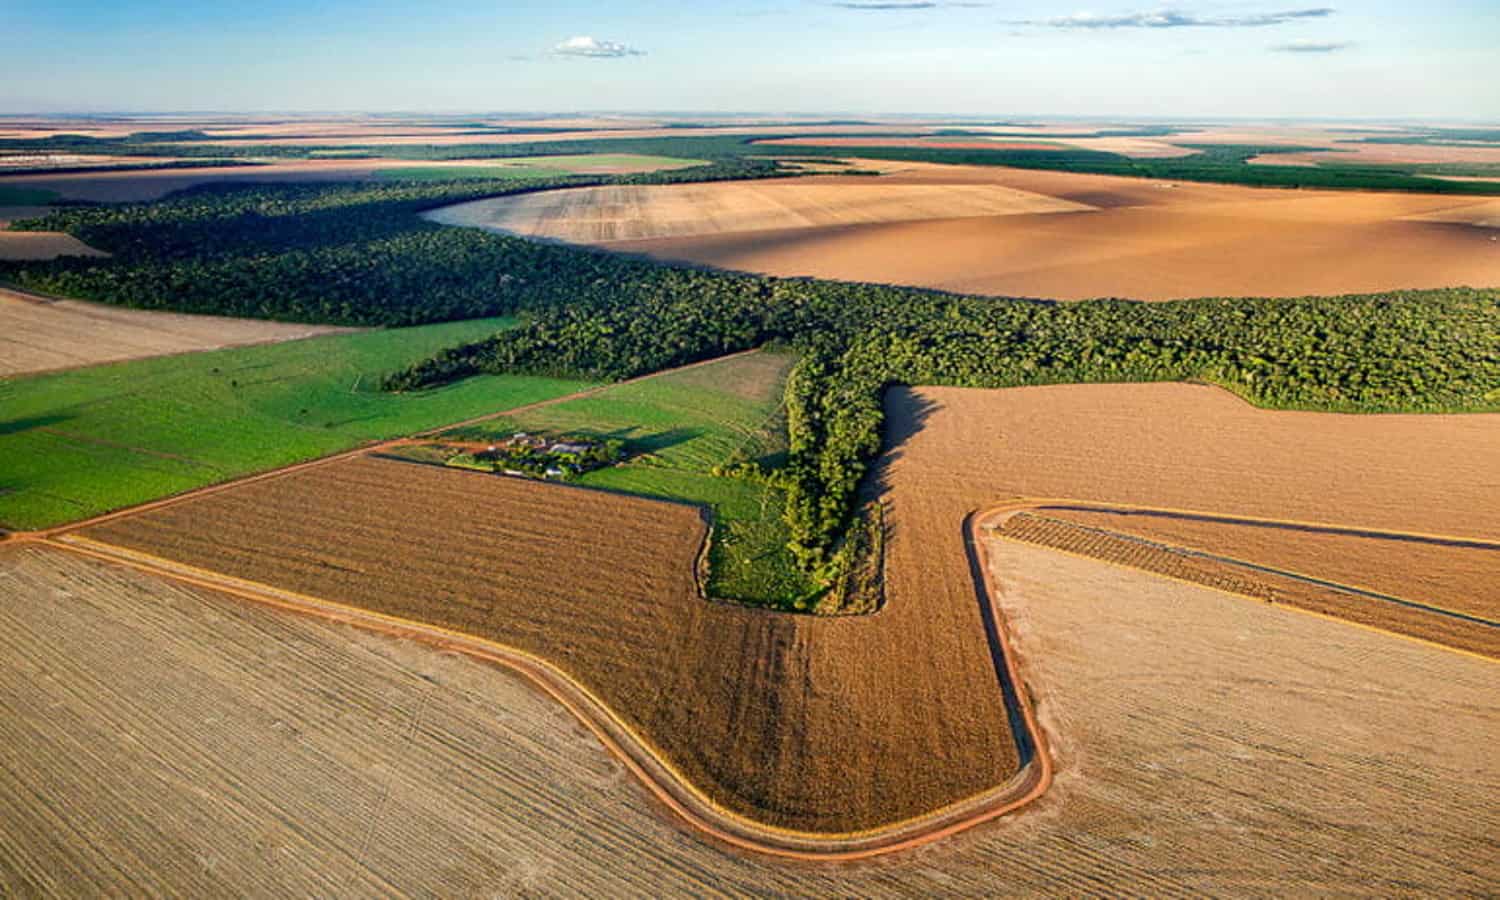 领土情报达到了新的高度，以帮助巴西的大豆行业避免森林砍伐并可持续扩展。